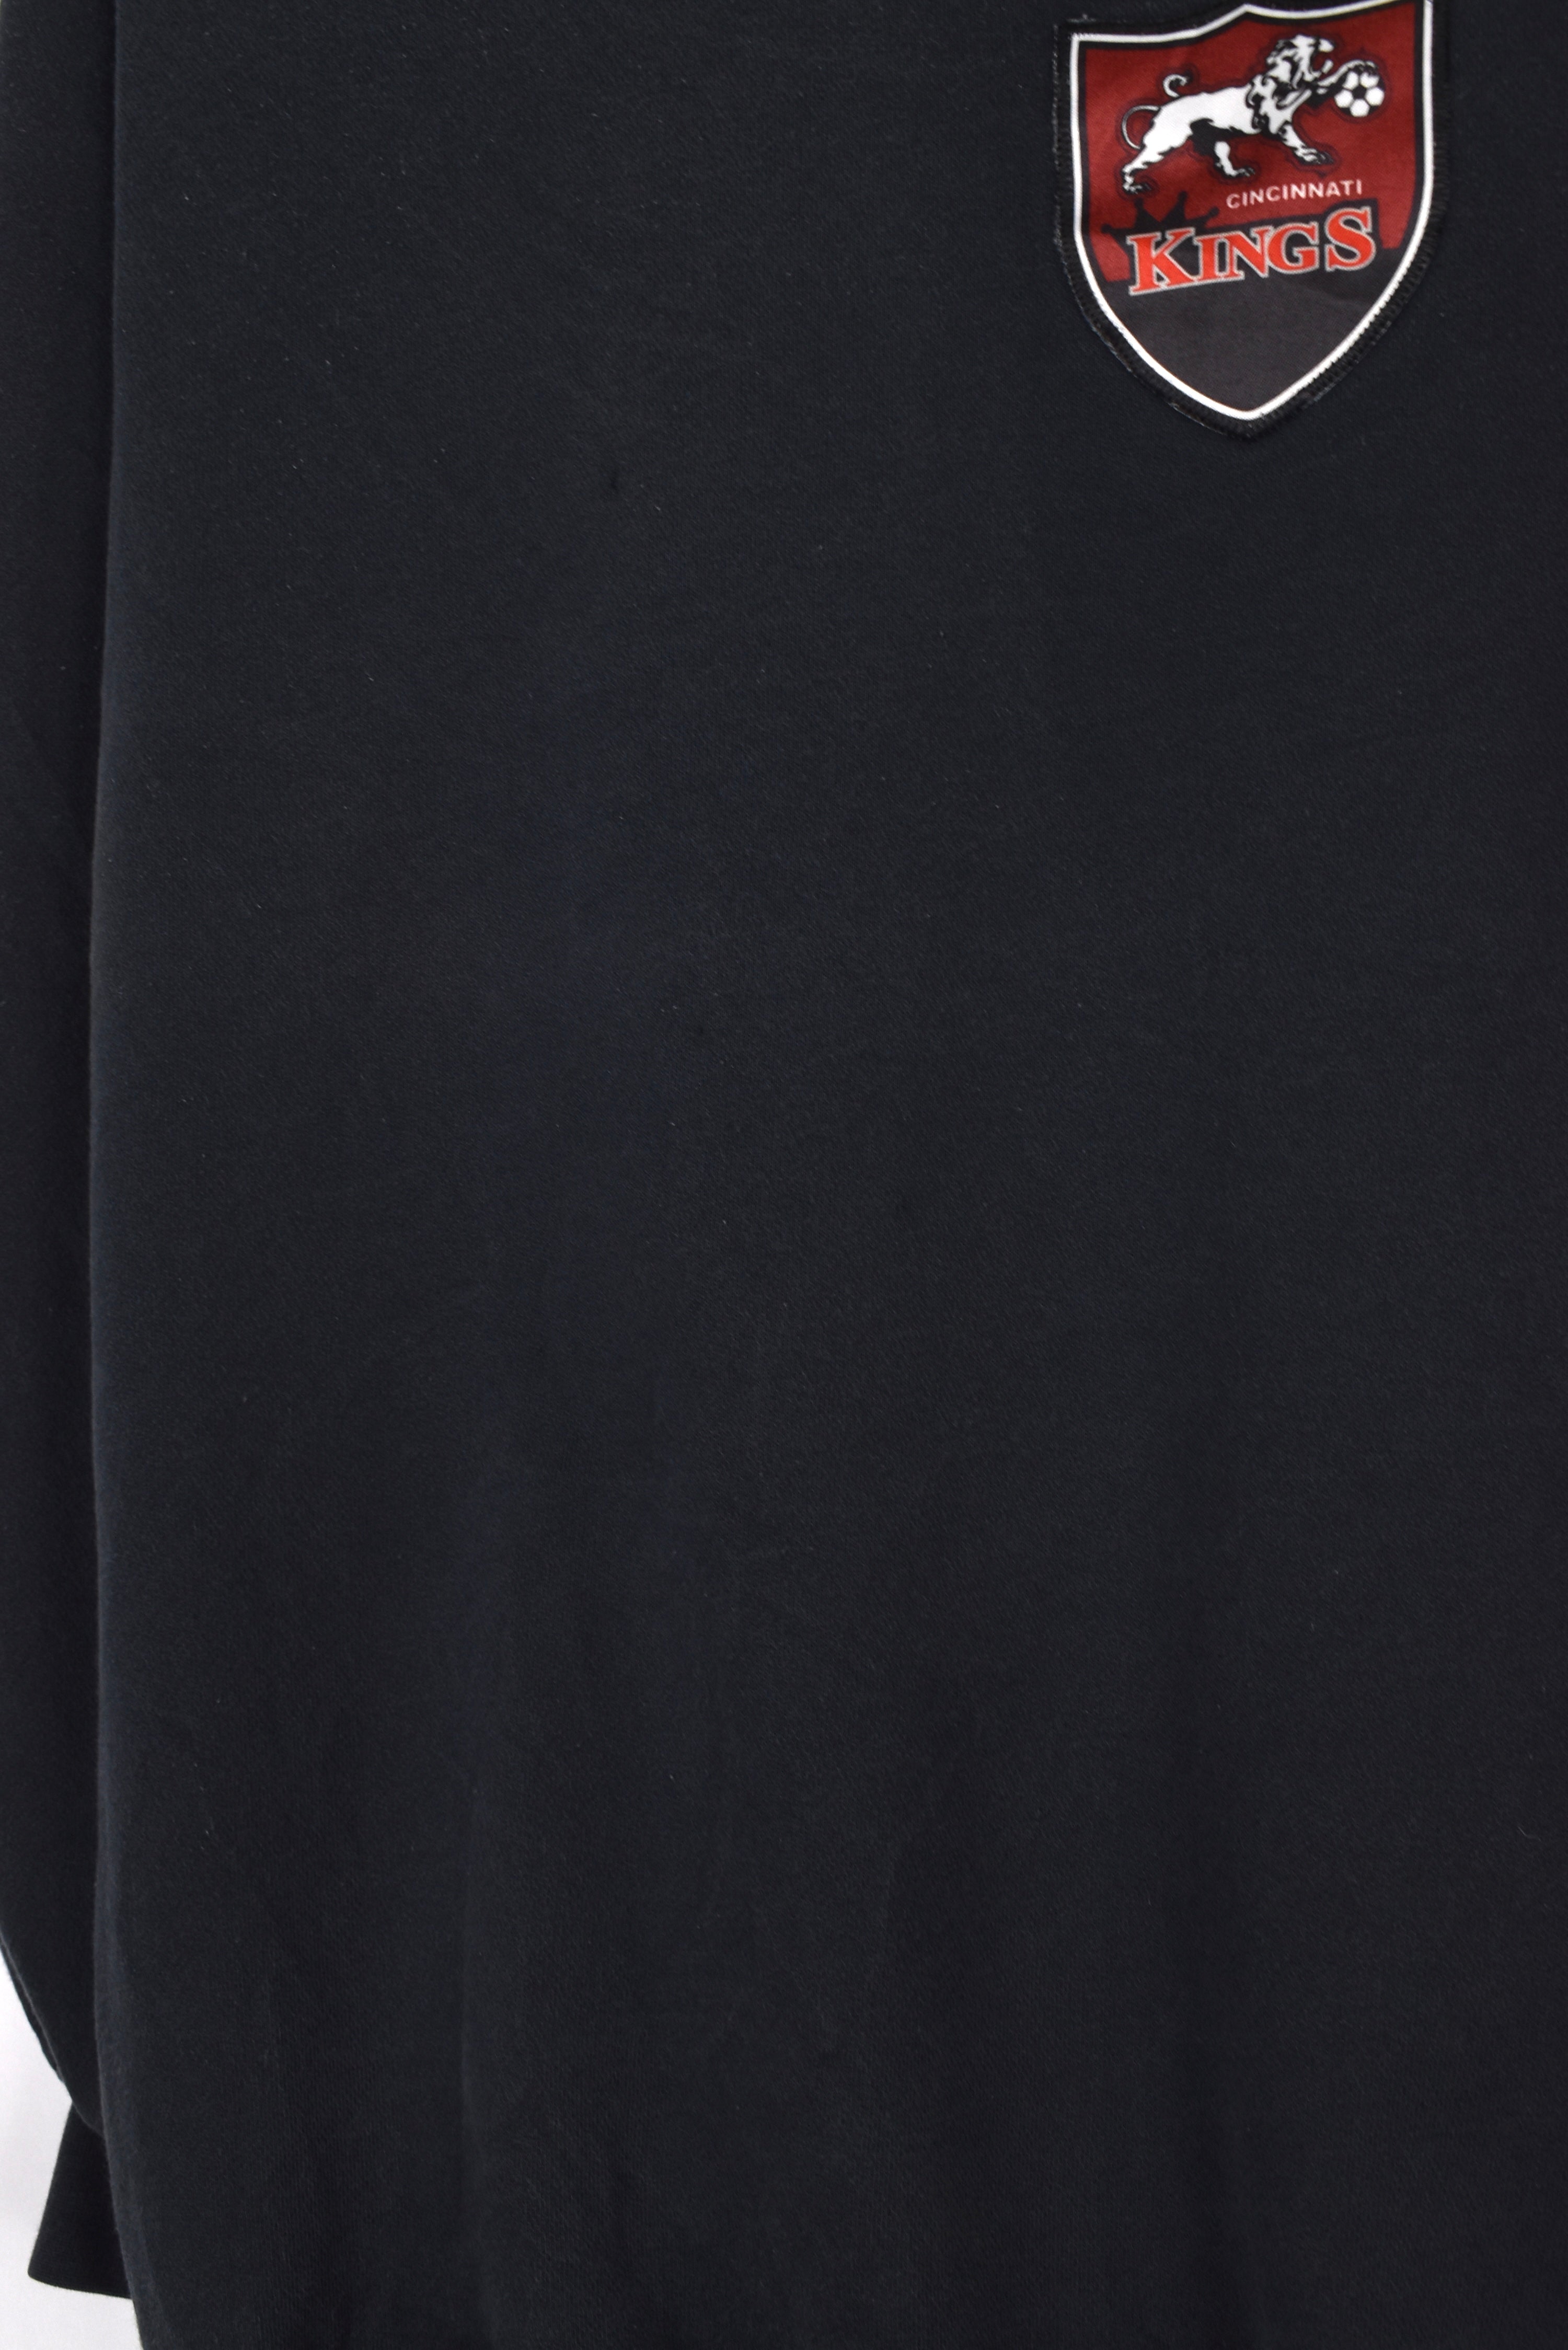 Vintage Adidas sweatshirt (L), black embroidered crewneck